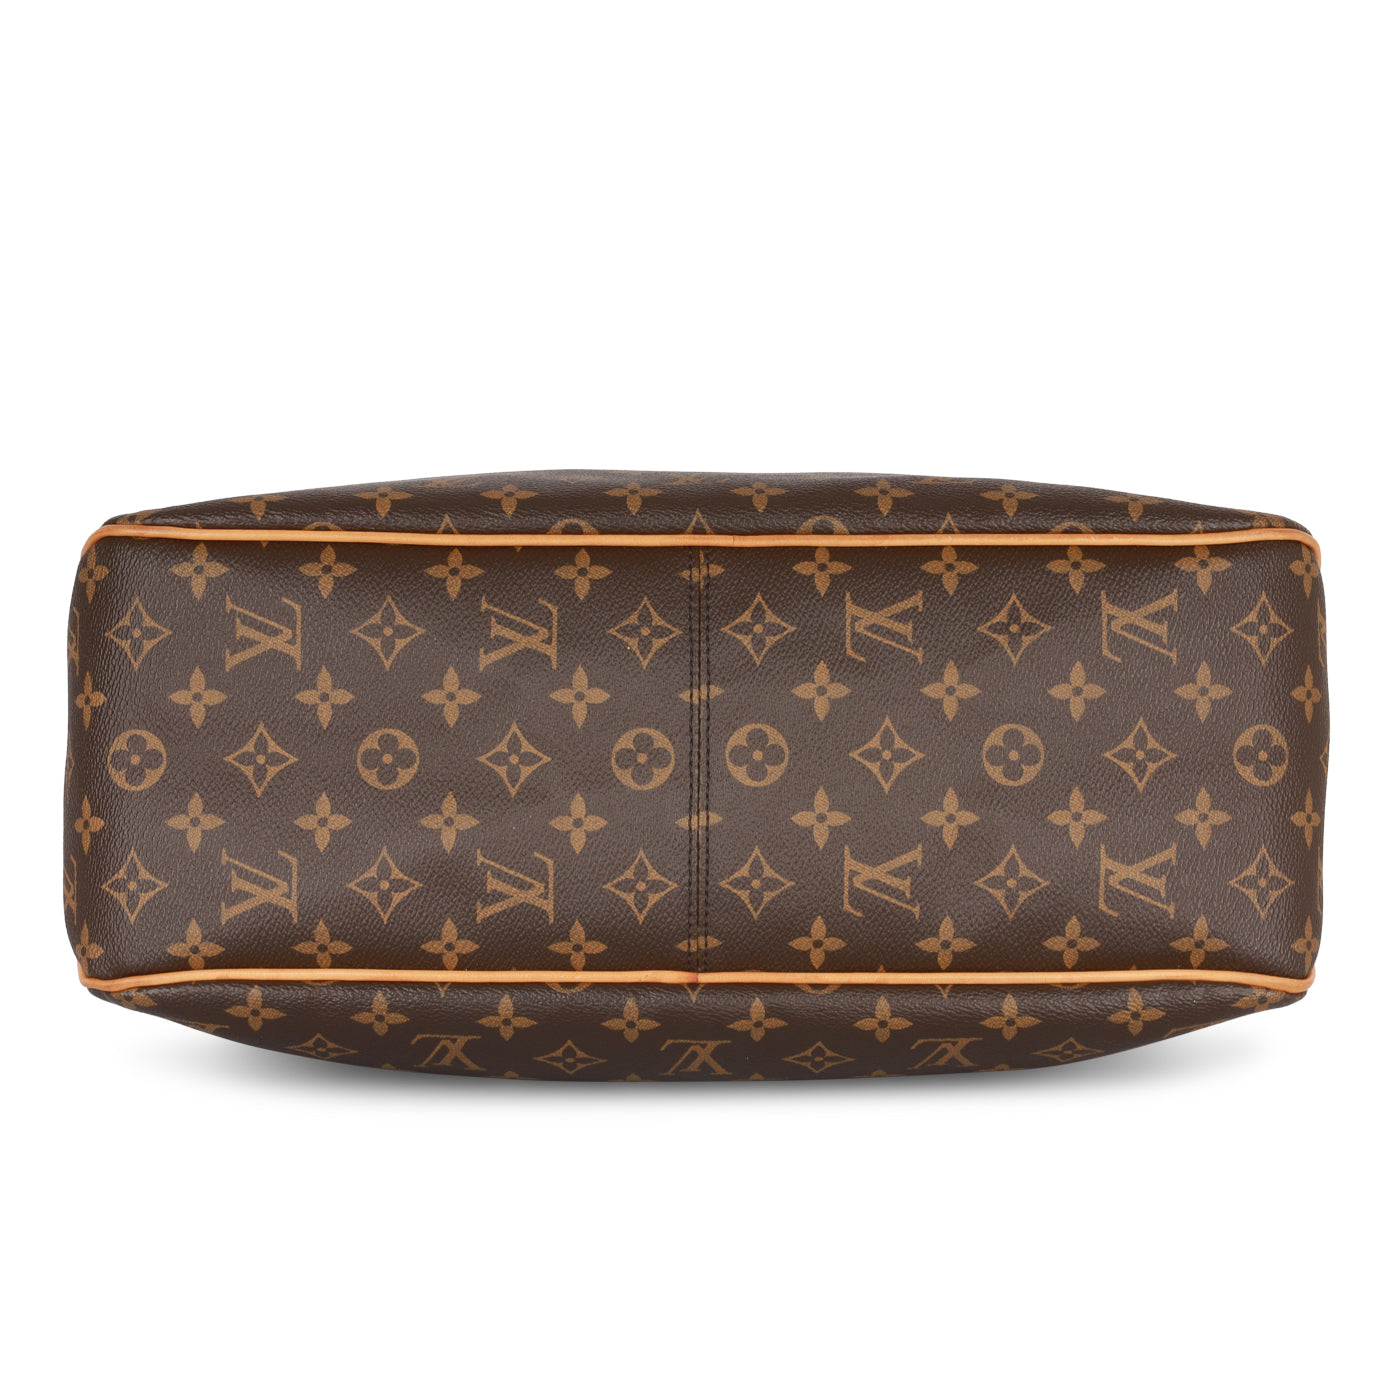 Shop for Louis Vuitton Monogram Canvas Leather Delightful PM Bag